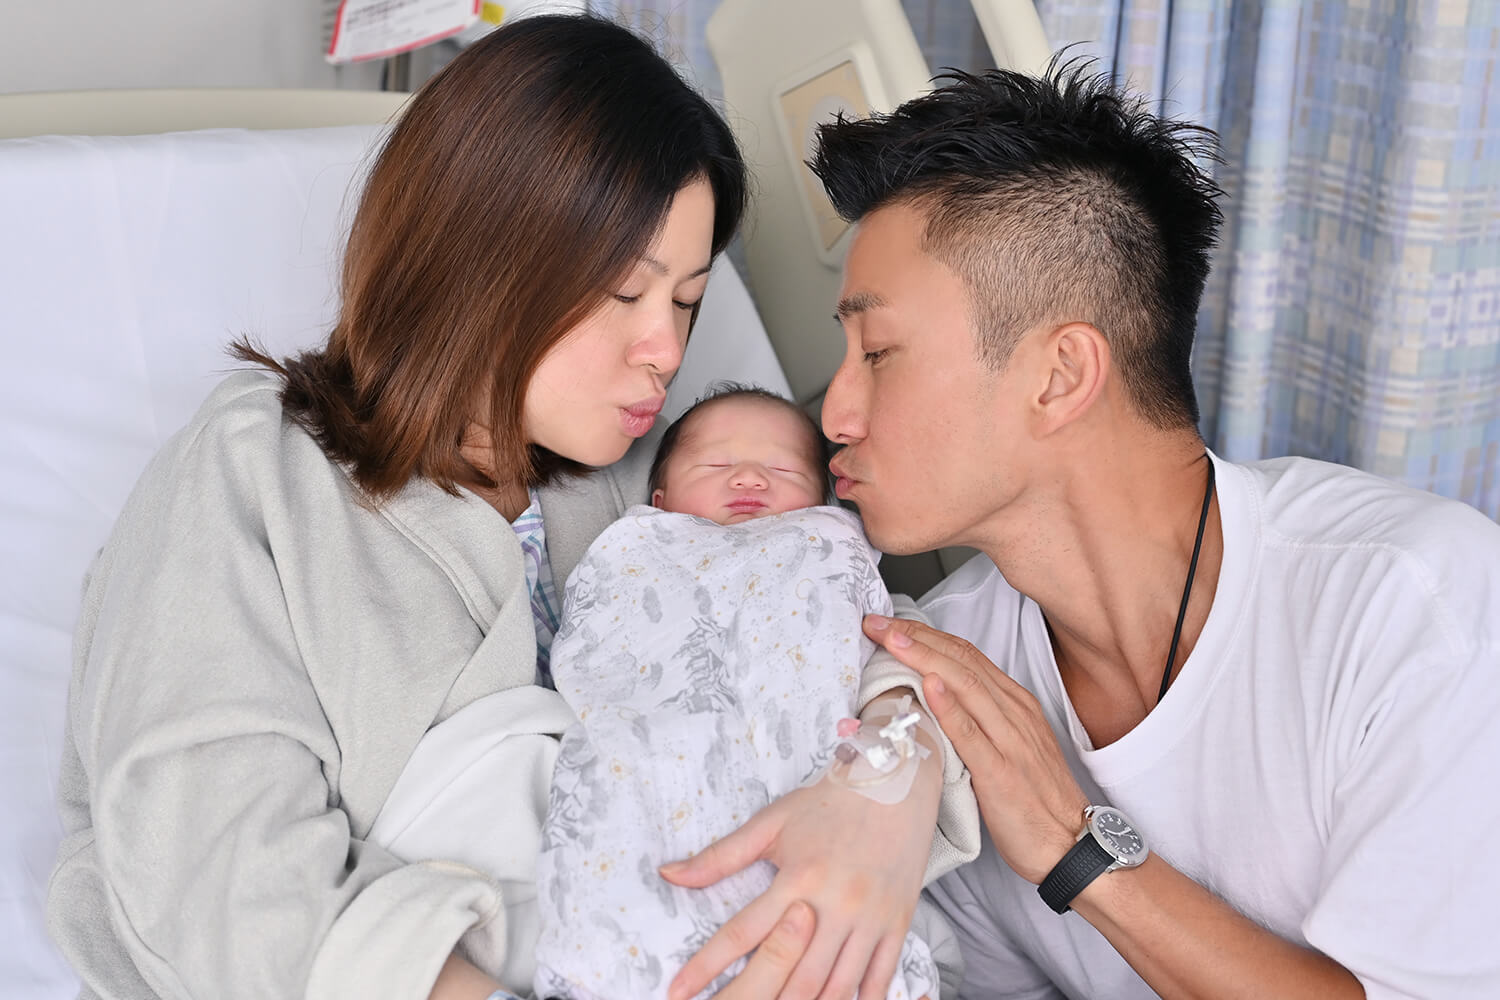 周日（五號），陳山聰在社交平台分享與太太Apple（何麗萍）及兒子Jaco，一家三口溫馨合照。